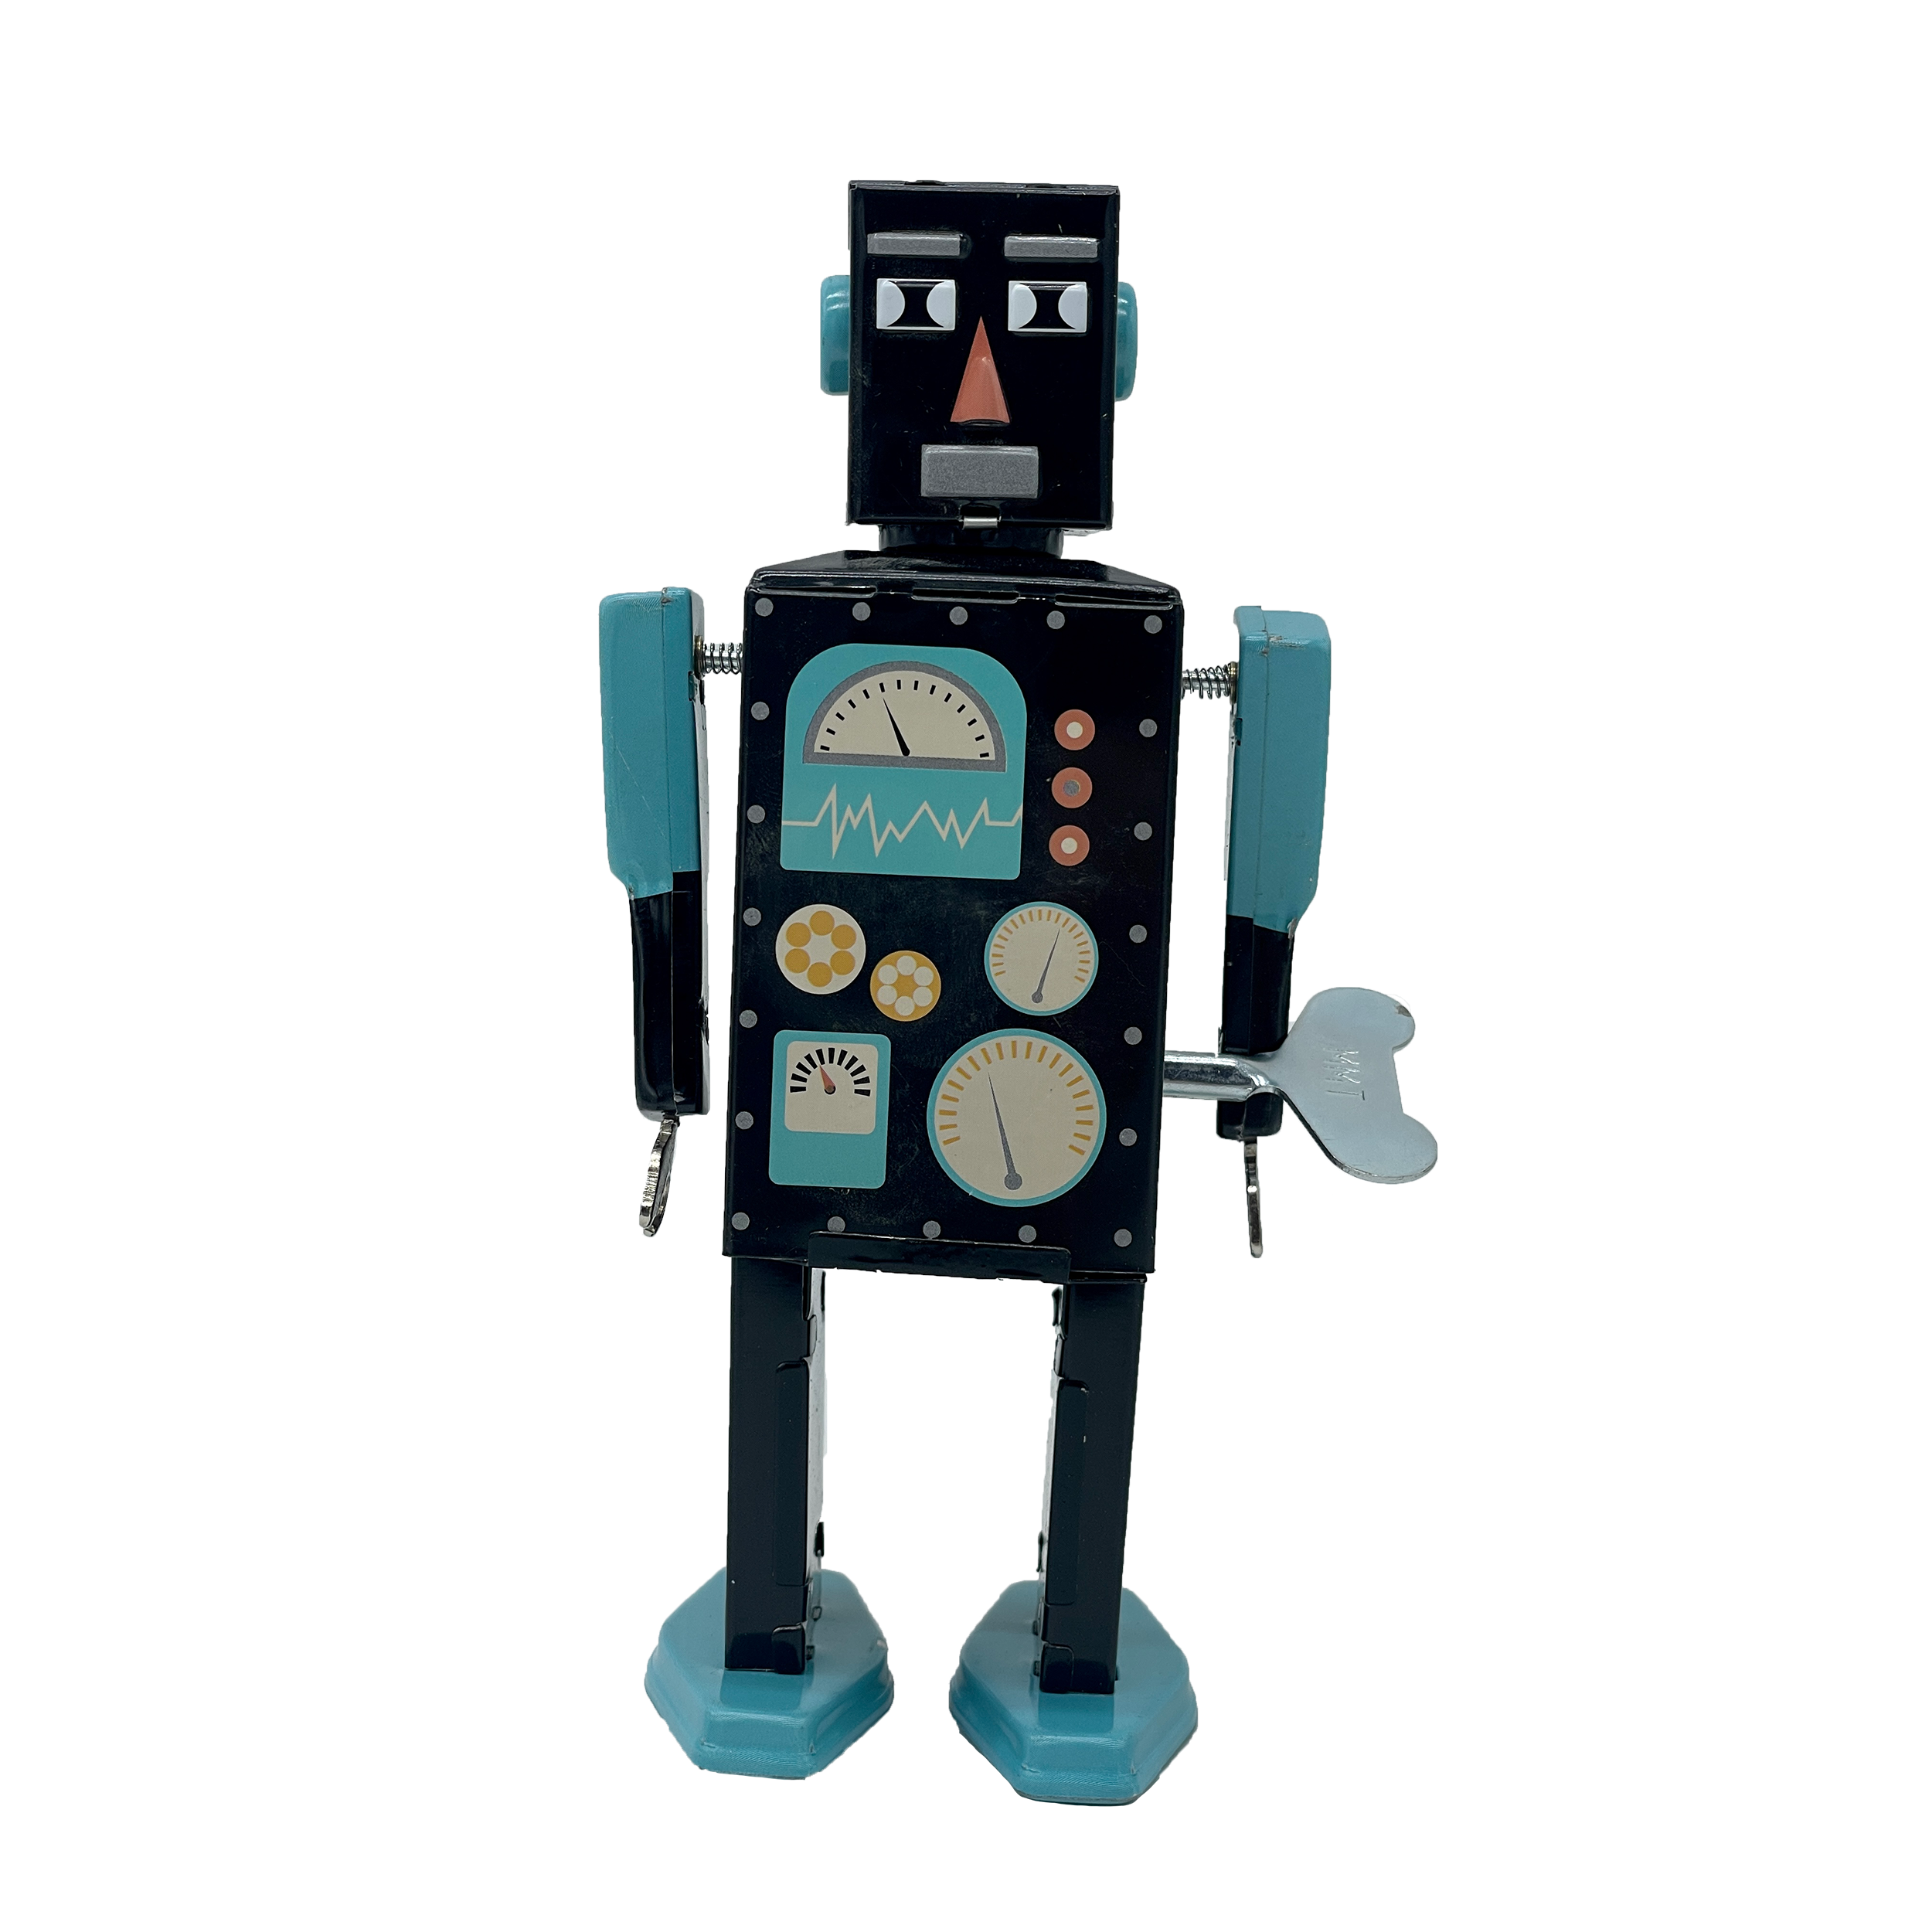 Acheter MetiarisBot - Robots Mr & Mrs Tin - Le Nuage de Charlotte